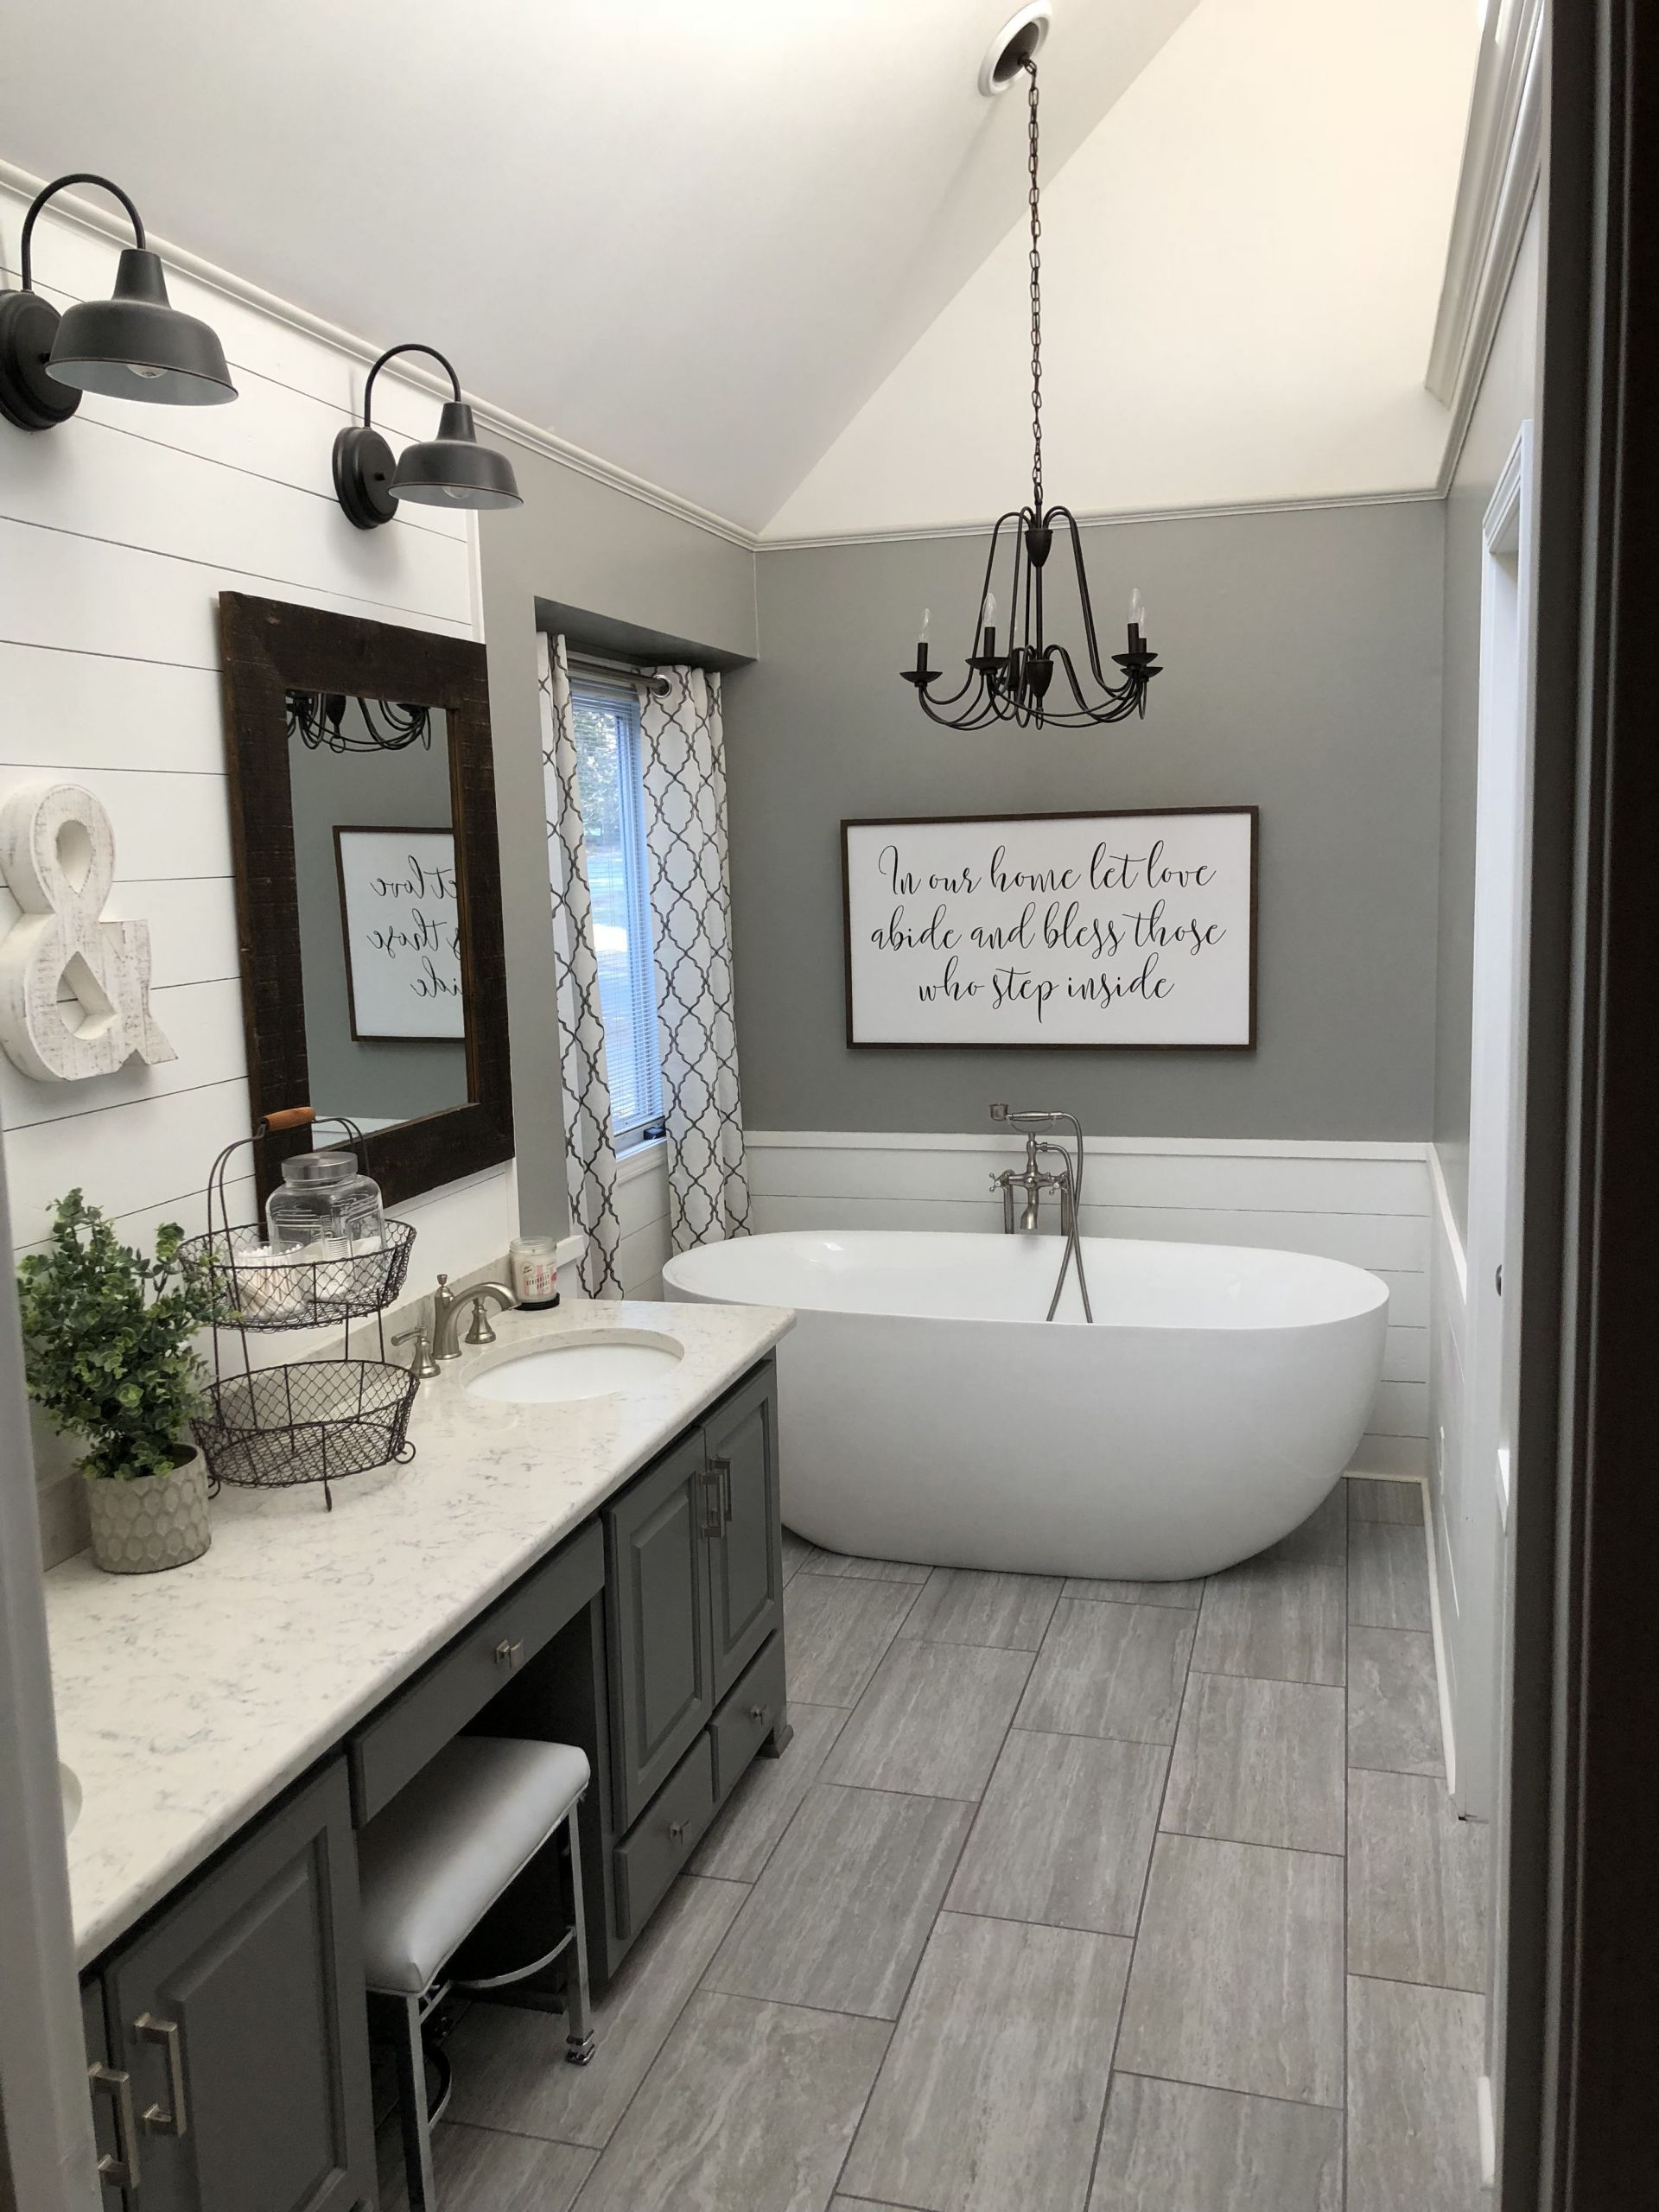 Bathroom Decor Ideas Pinterest
 Master bath farmhouse style